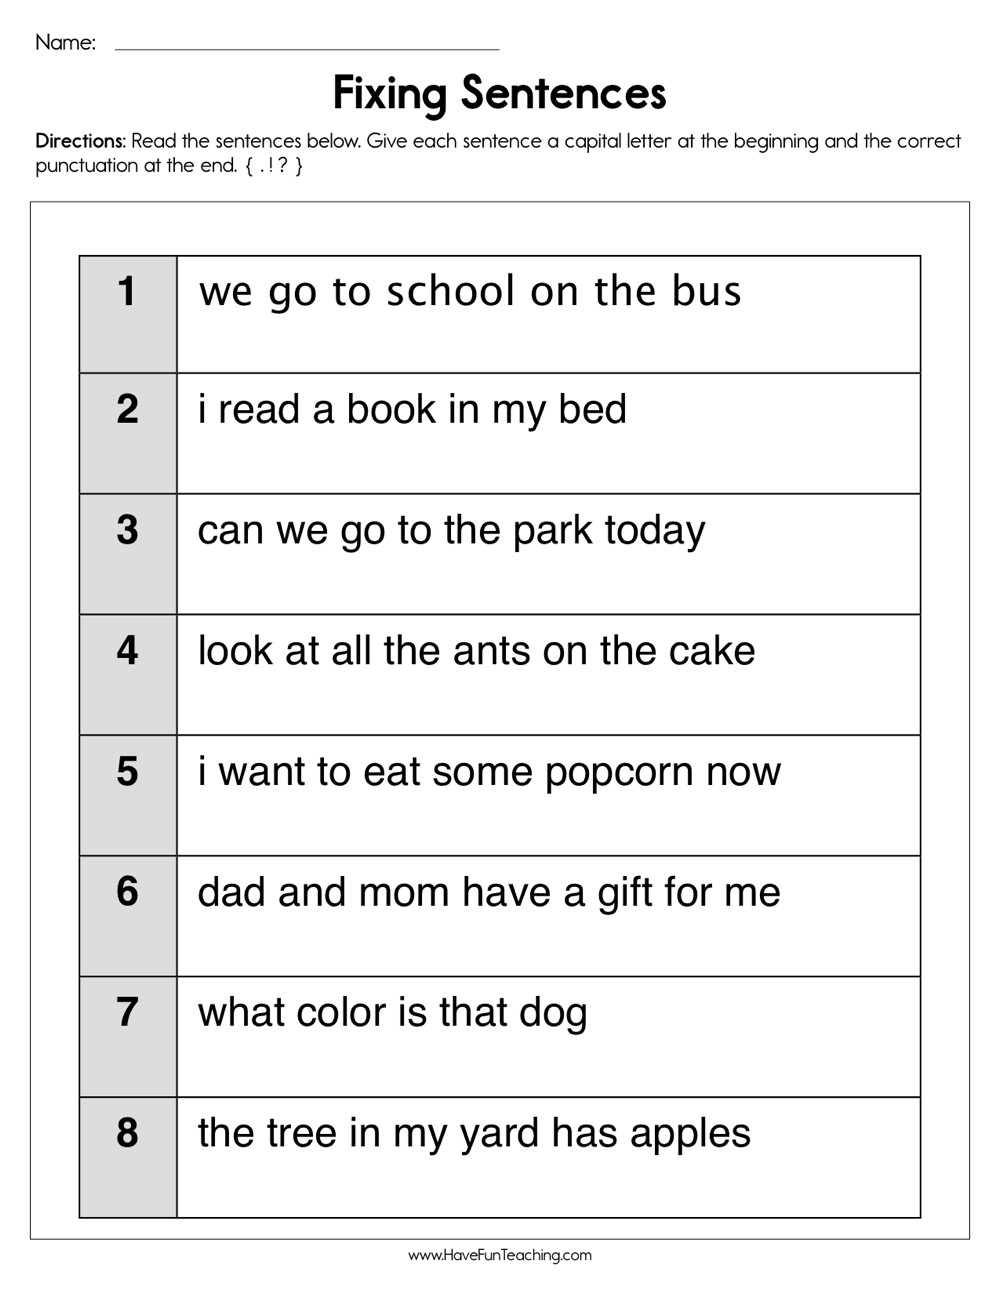 Complete Sentences Worksheets 1st Grade Fixing Sentences Worksheet